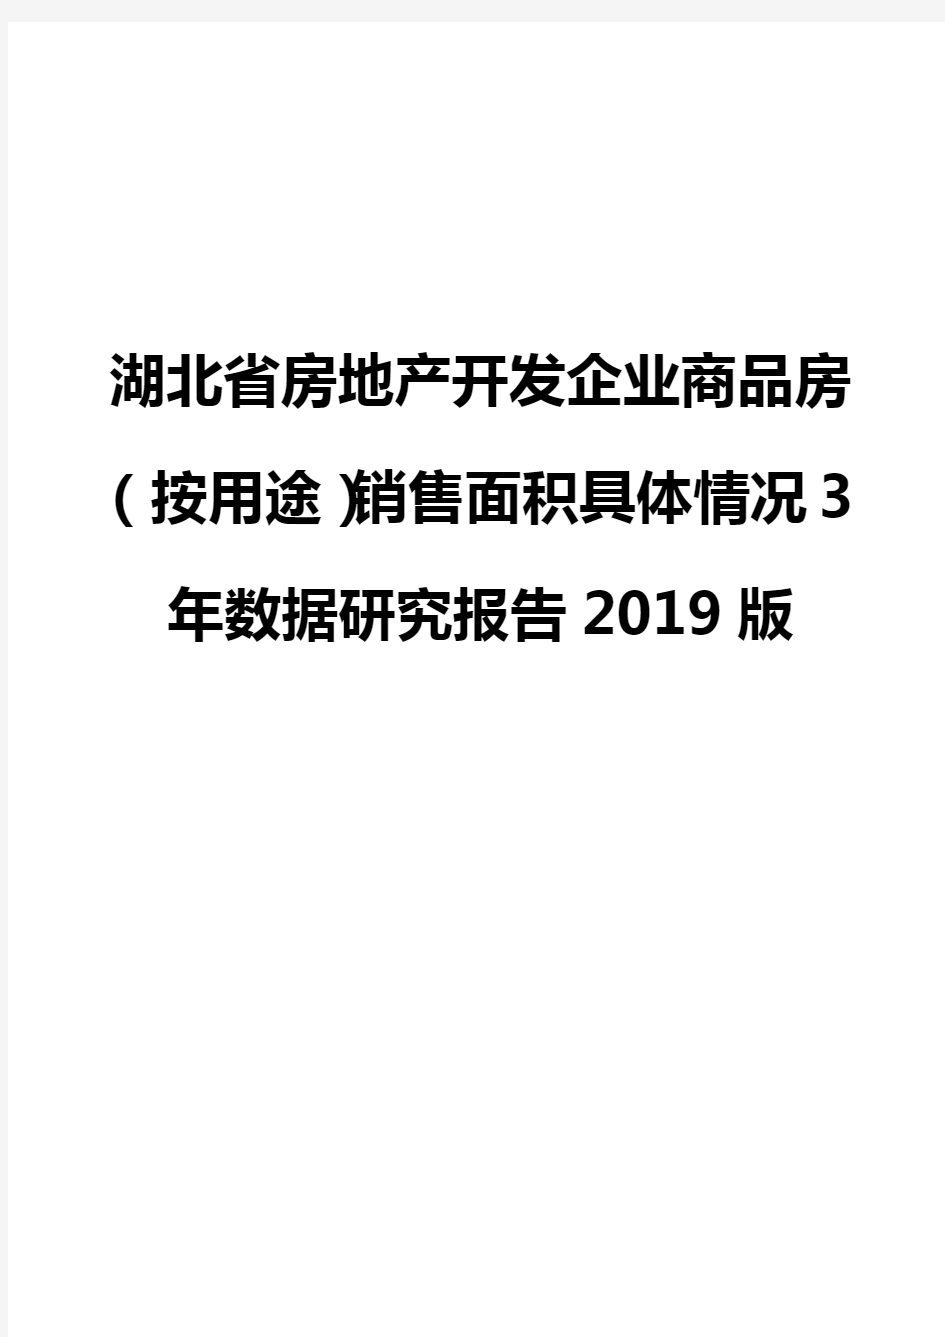 湖北省房地产开发企业商品房(按用途)销售面积具体情况3年数据研究报告2019版